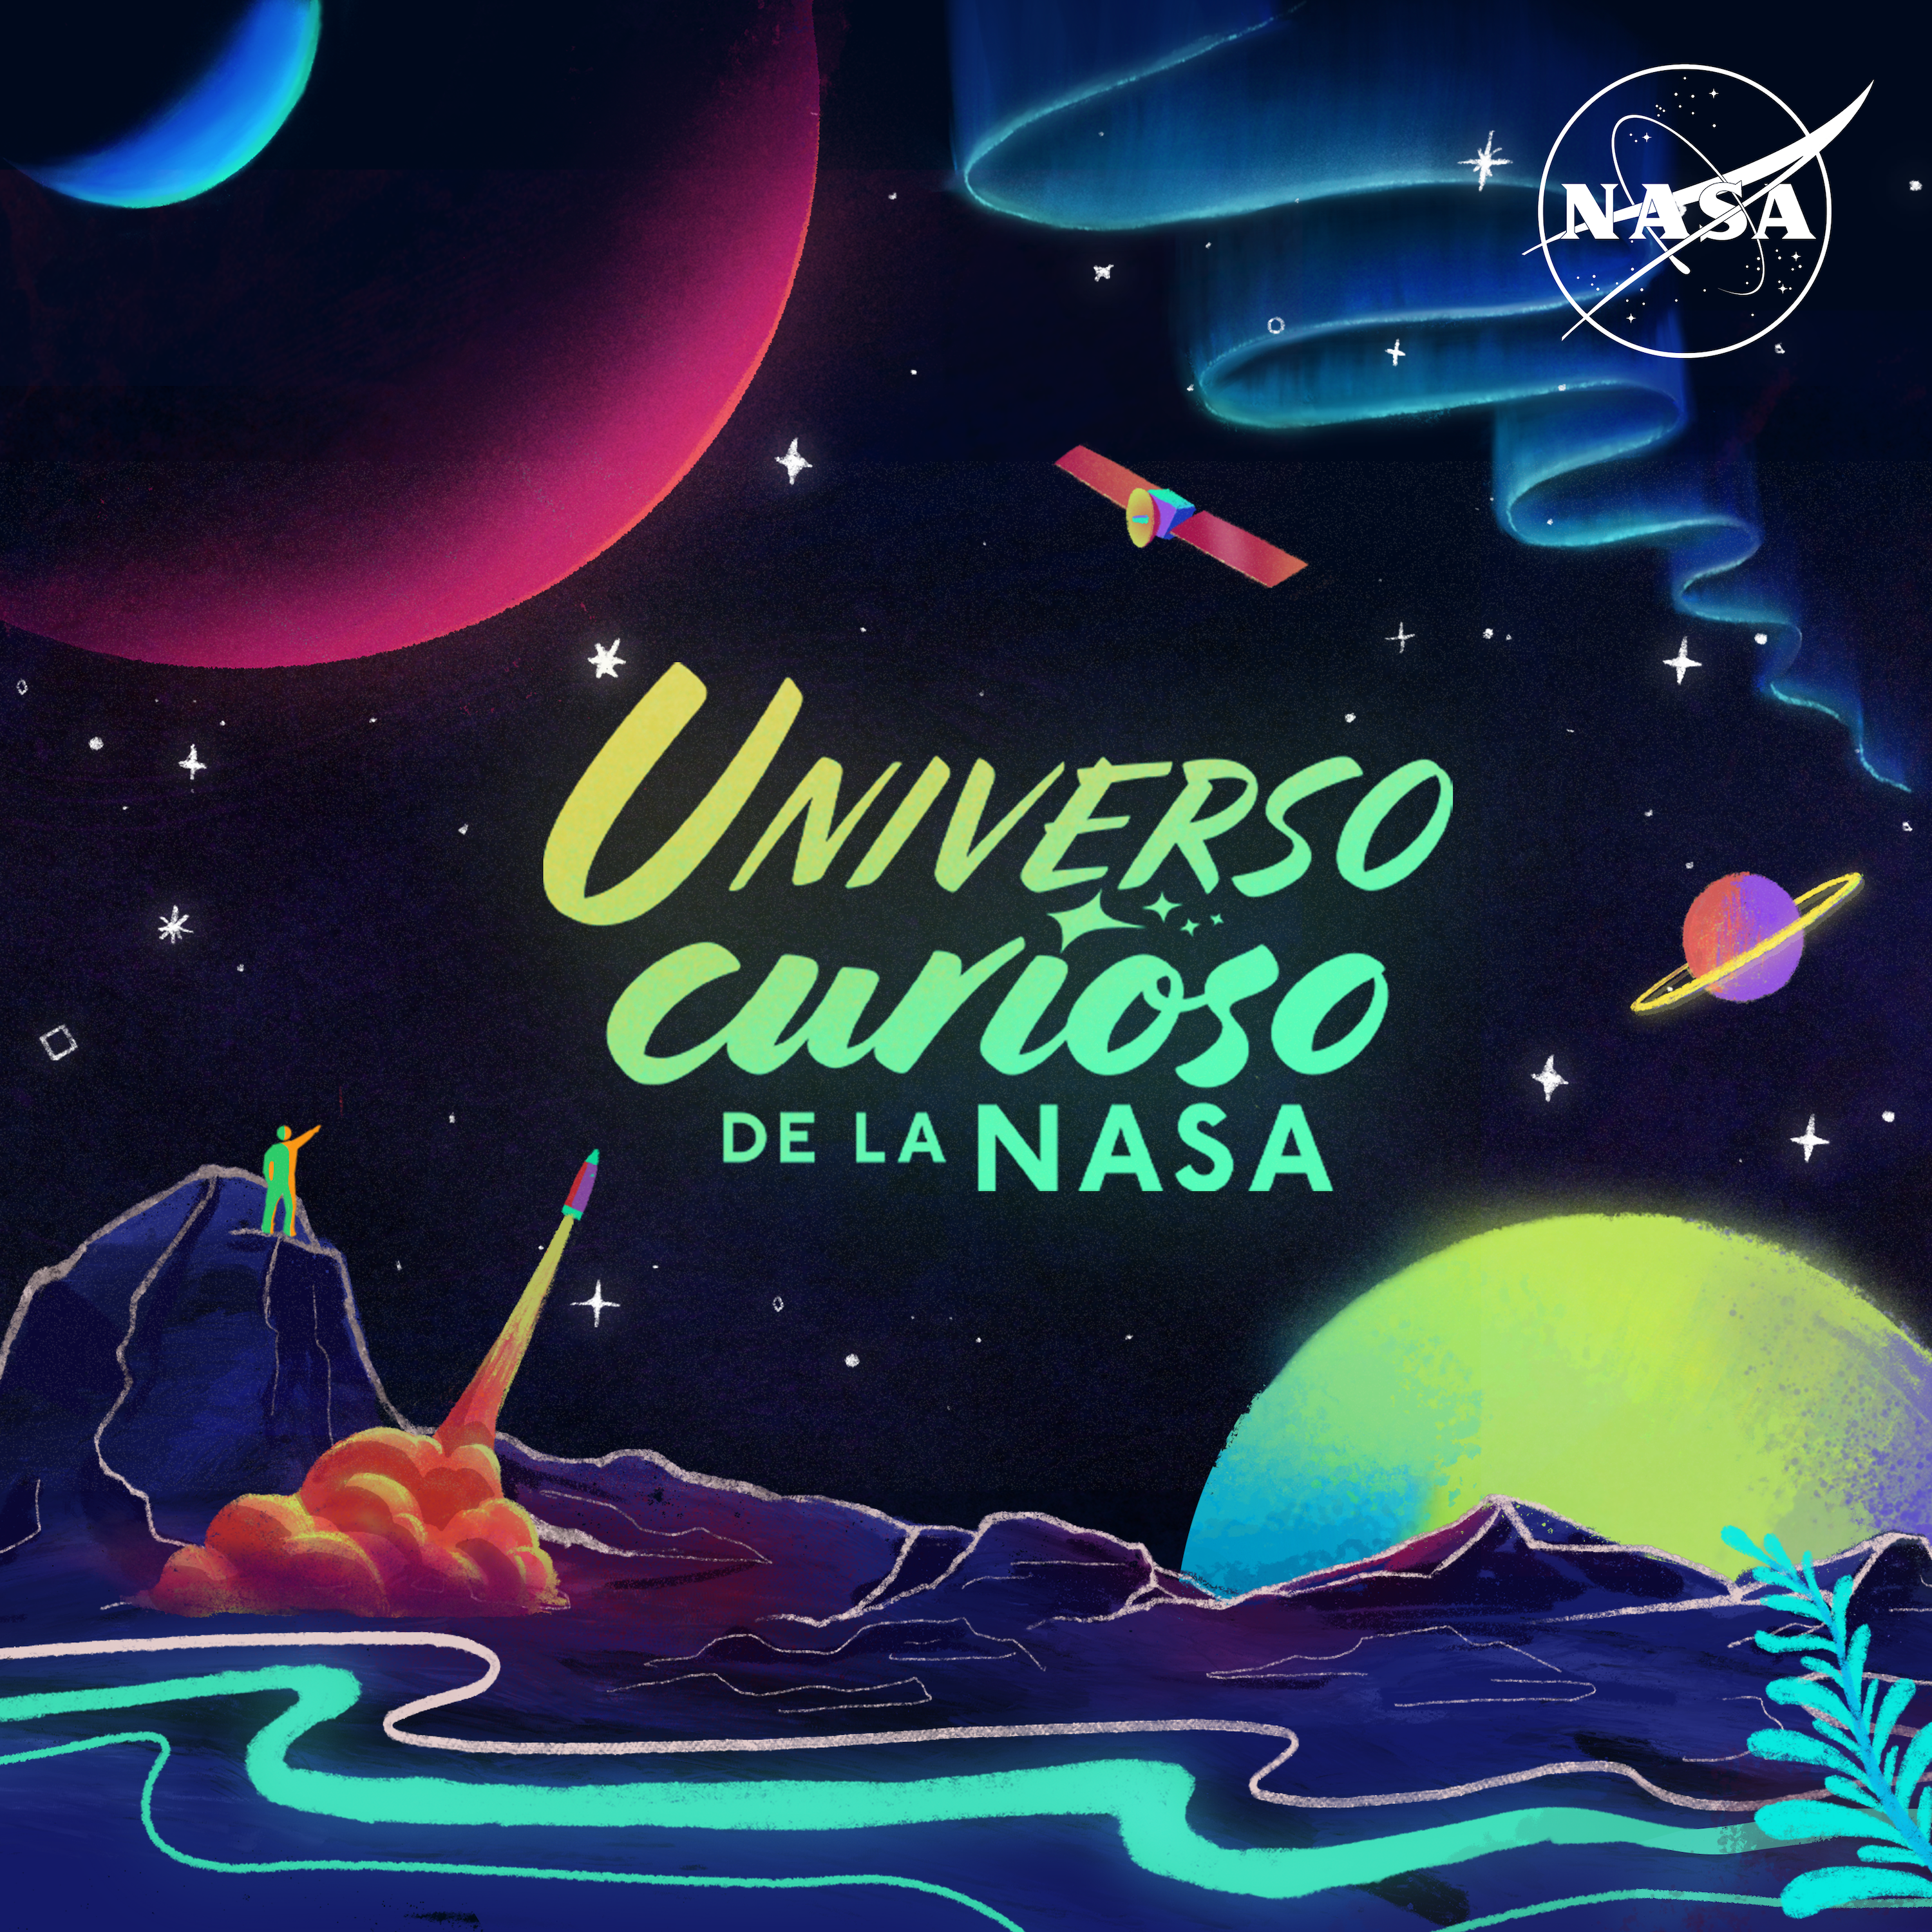 The cover art display for the Universo curioso de la NASA podcast.